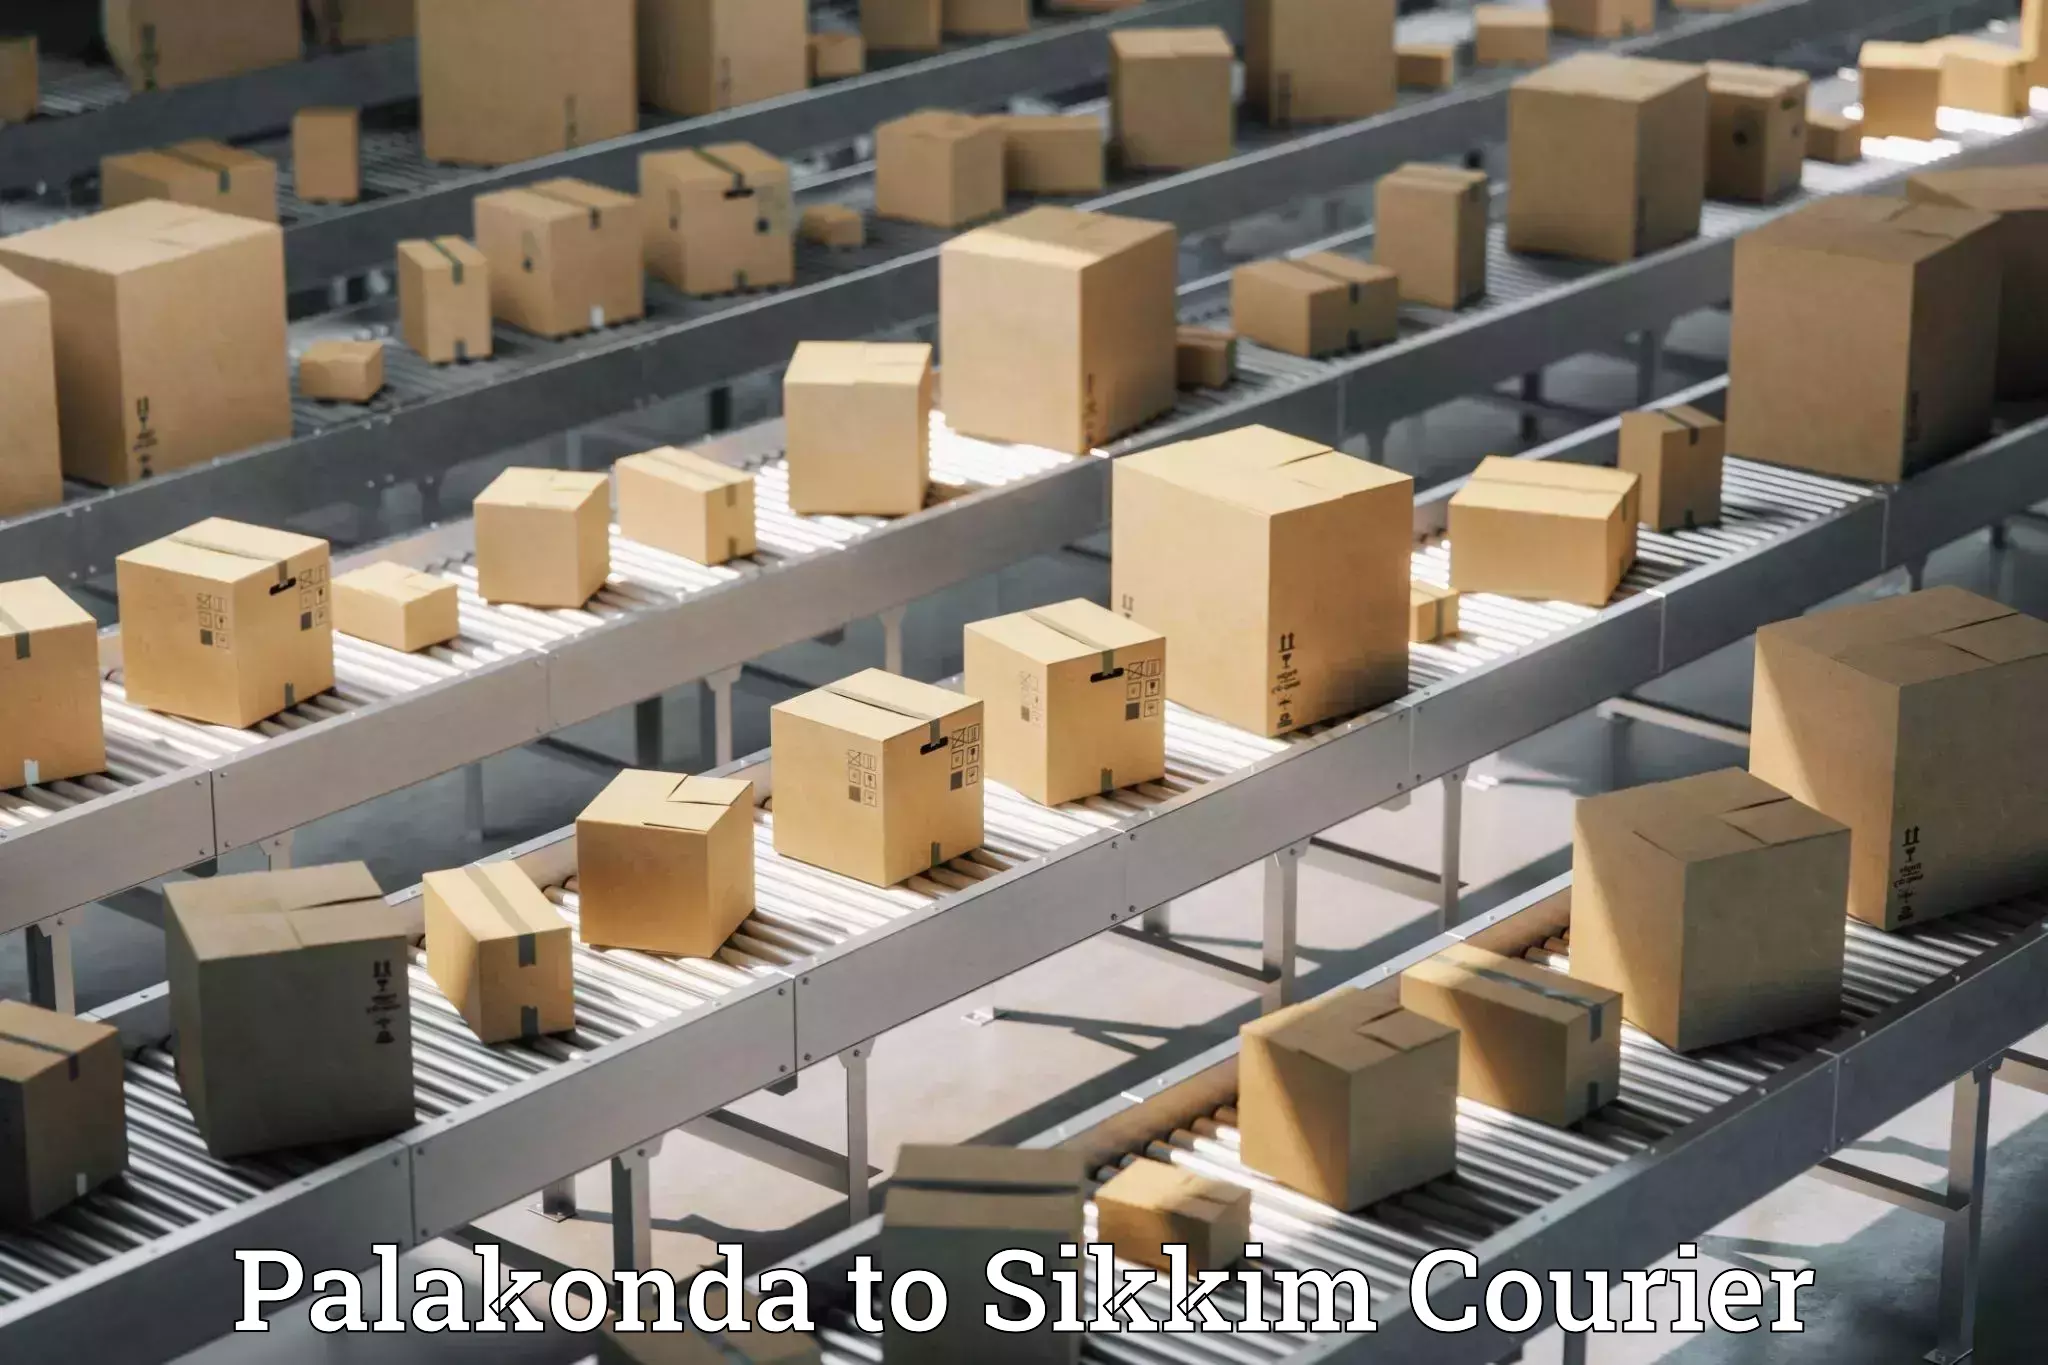 Customizable shipping options Palakonda to North Sikkim